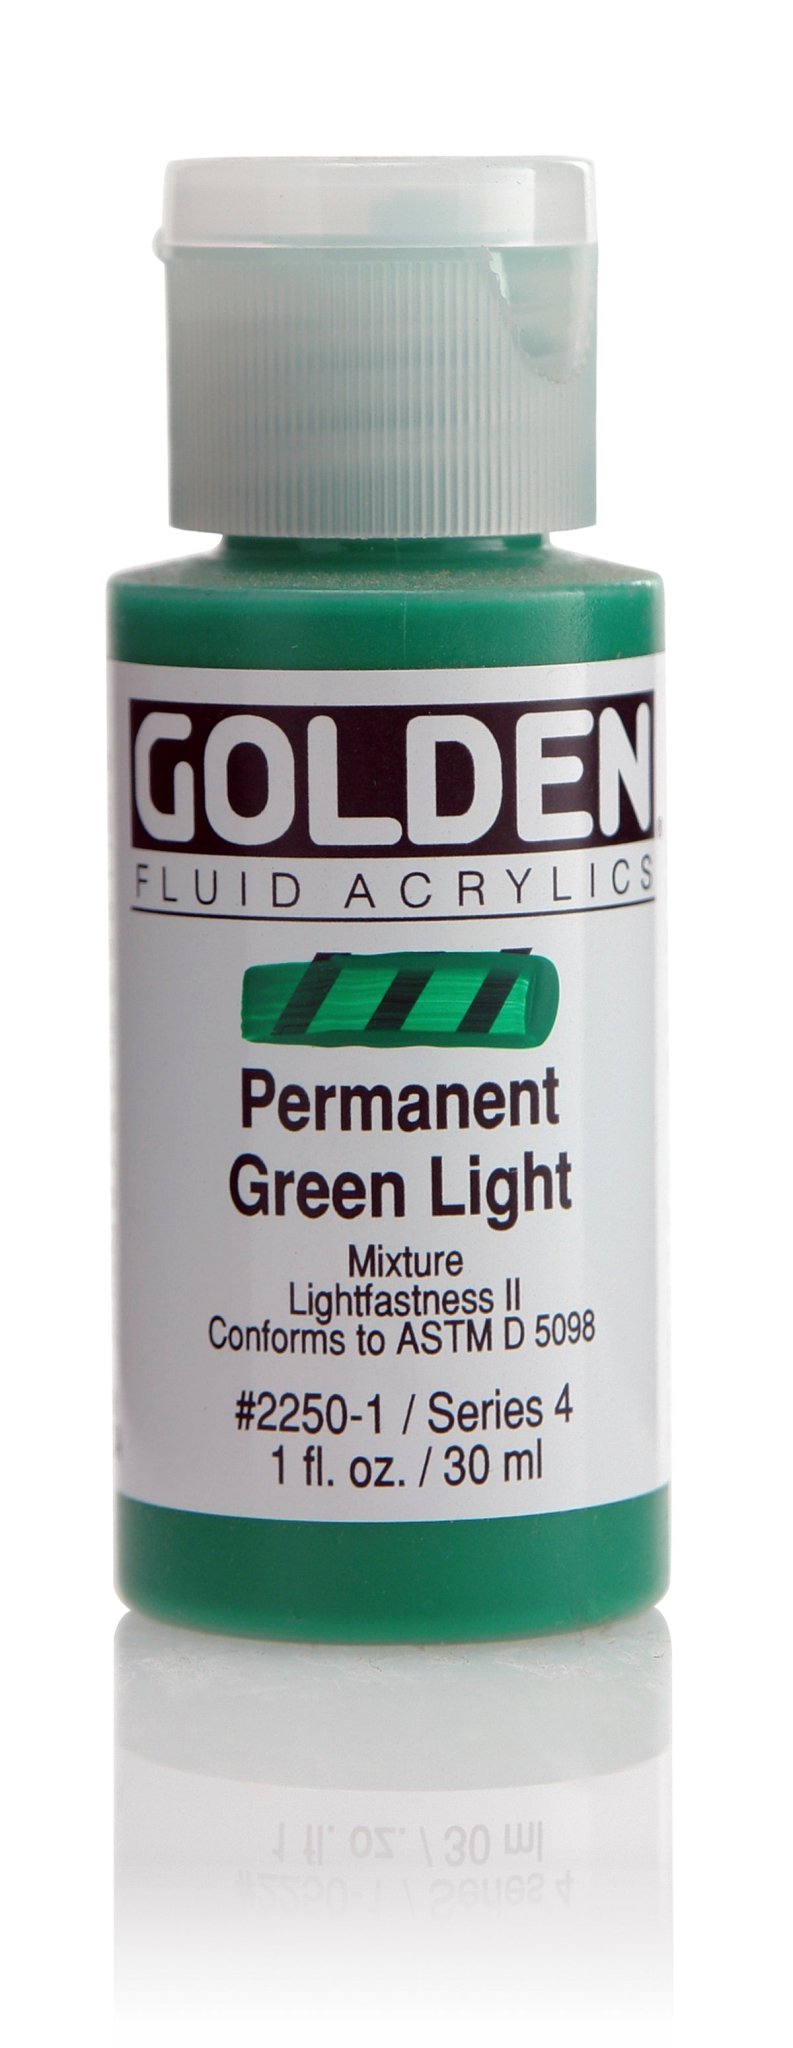 Golden Fluid Acrylics - Permanent Green Light - 30ml - Create A Little Magic (Pty) Ltd